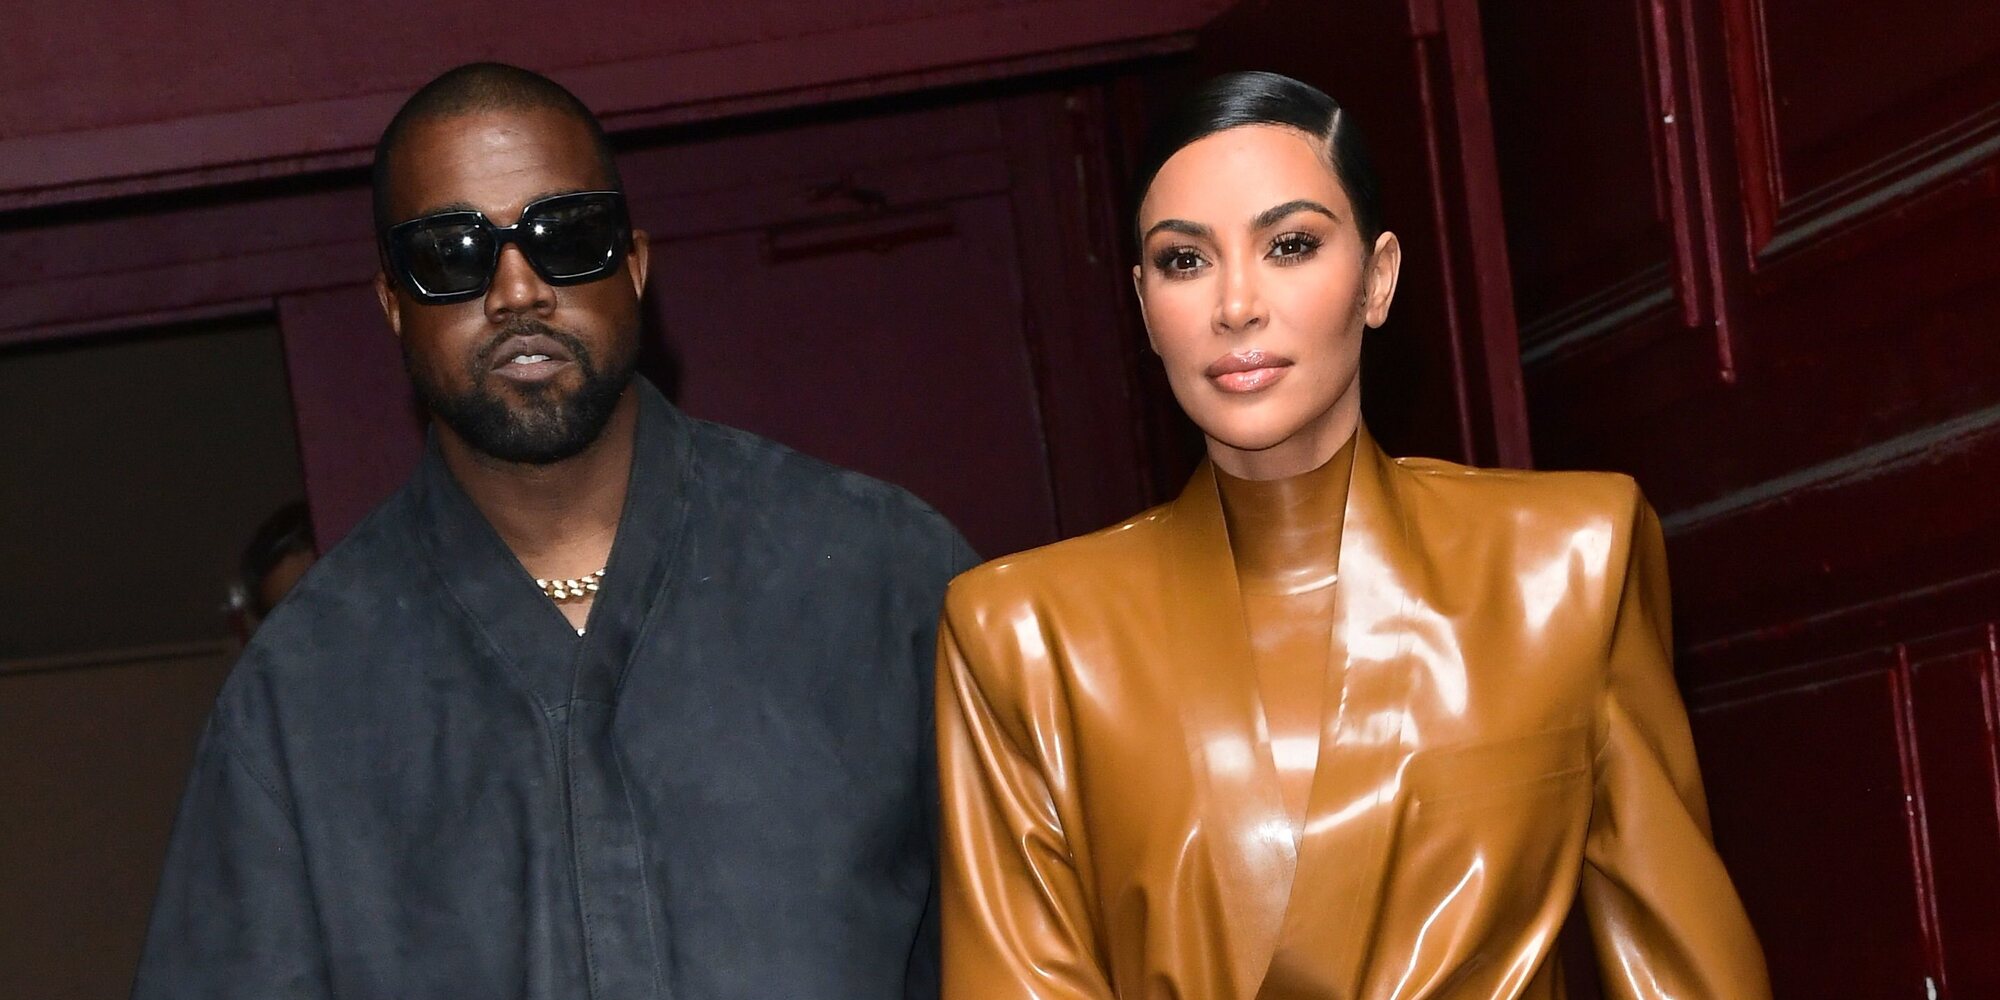 El divorcio entre Kim Kardashian y Kanye West estaría a punto de llegar a su fin casi 2 años después